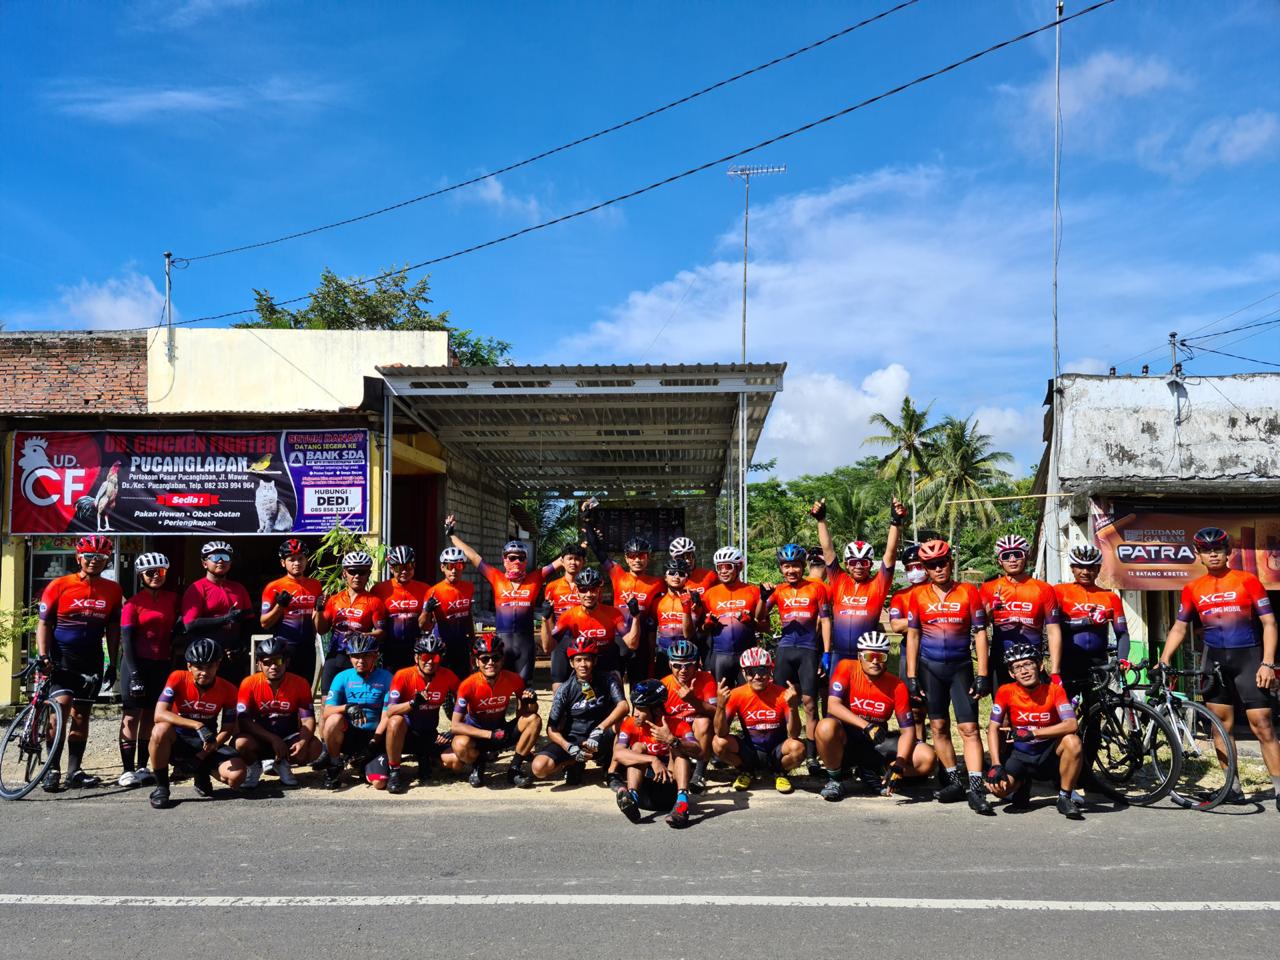 XC9 Tulungagung, Jawa Timur, mengadakan gowes bareng pertama pada 1 Januari 2021, dengan tema Gowes Bareng Kejutan. (Foto: Dok. Komunitas XC9 Tulungagung)